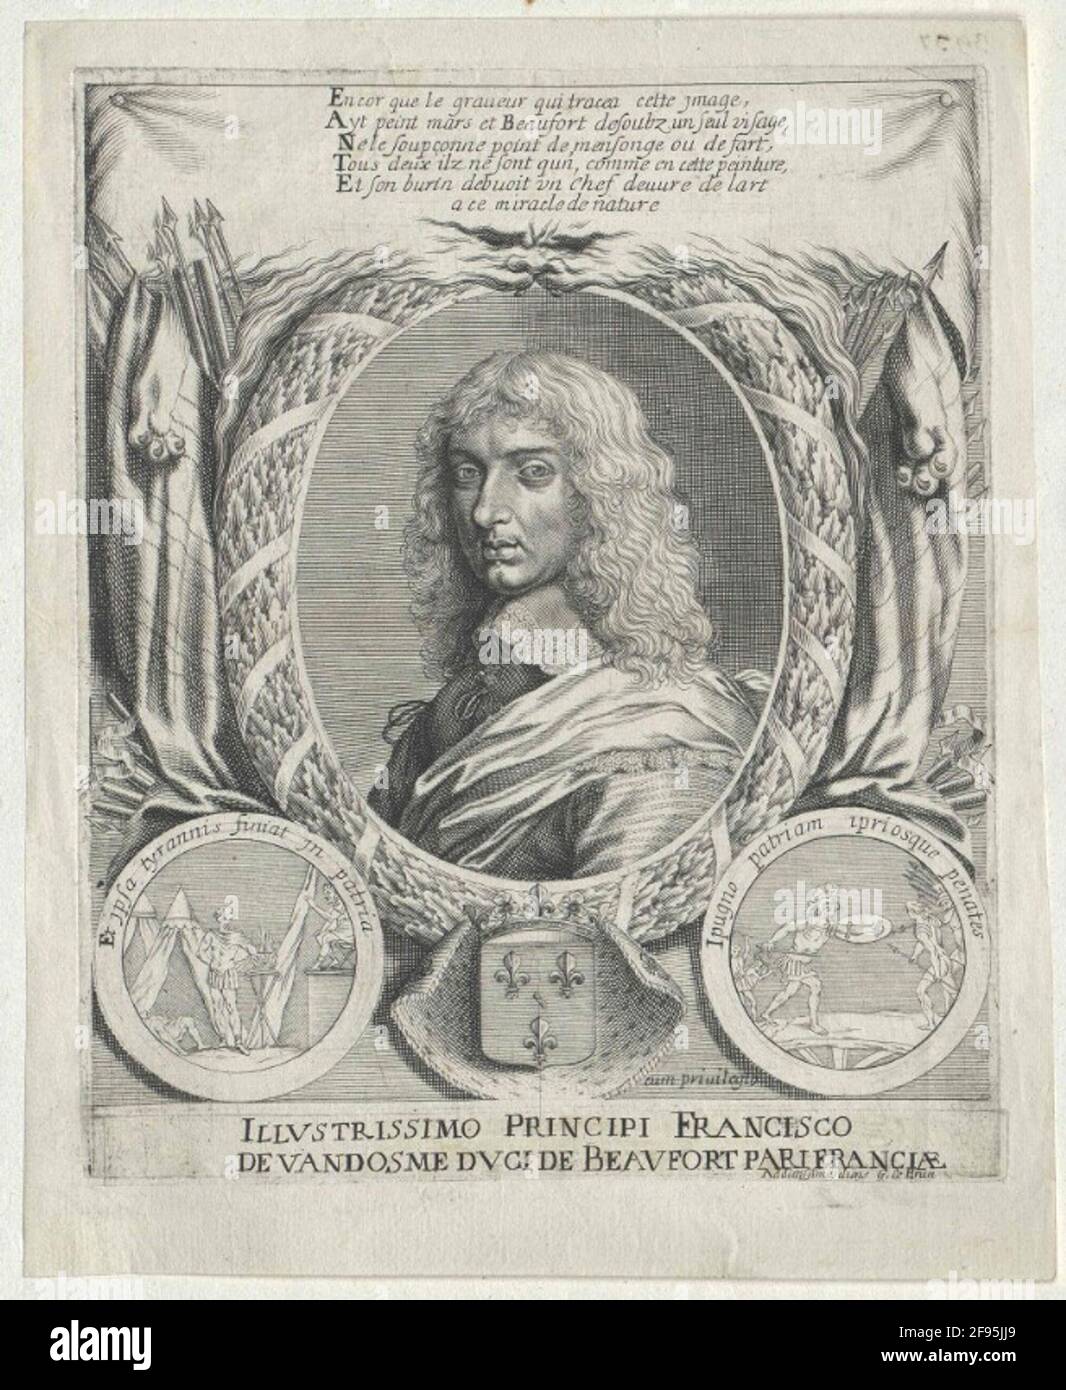 Vendôme, Duc de Beaufort, François de. Banque D'Images